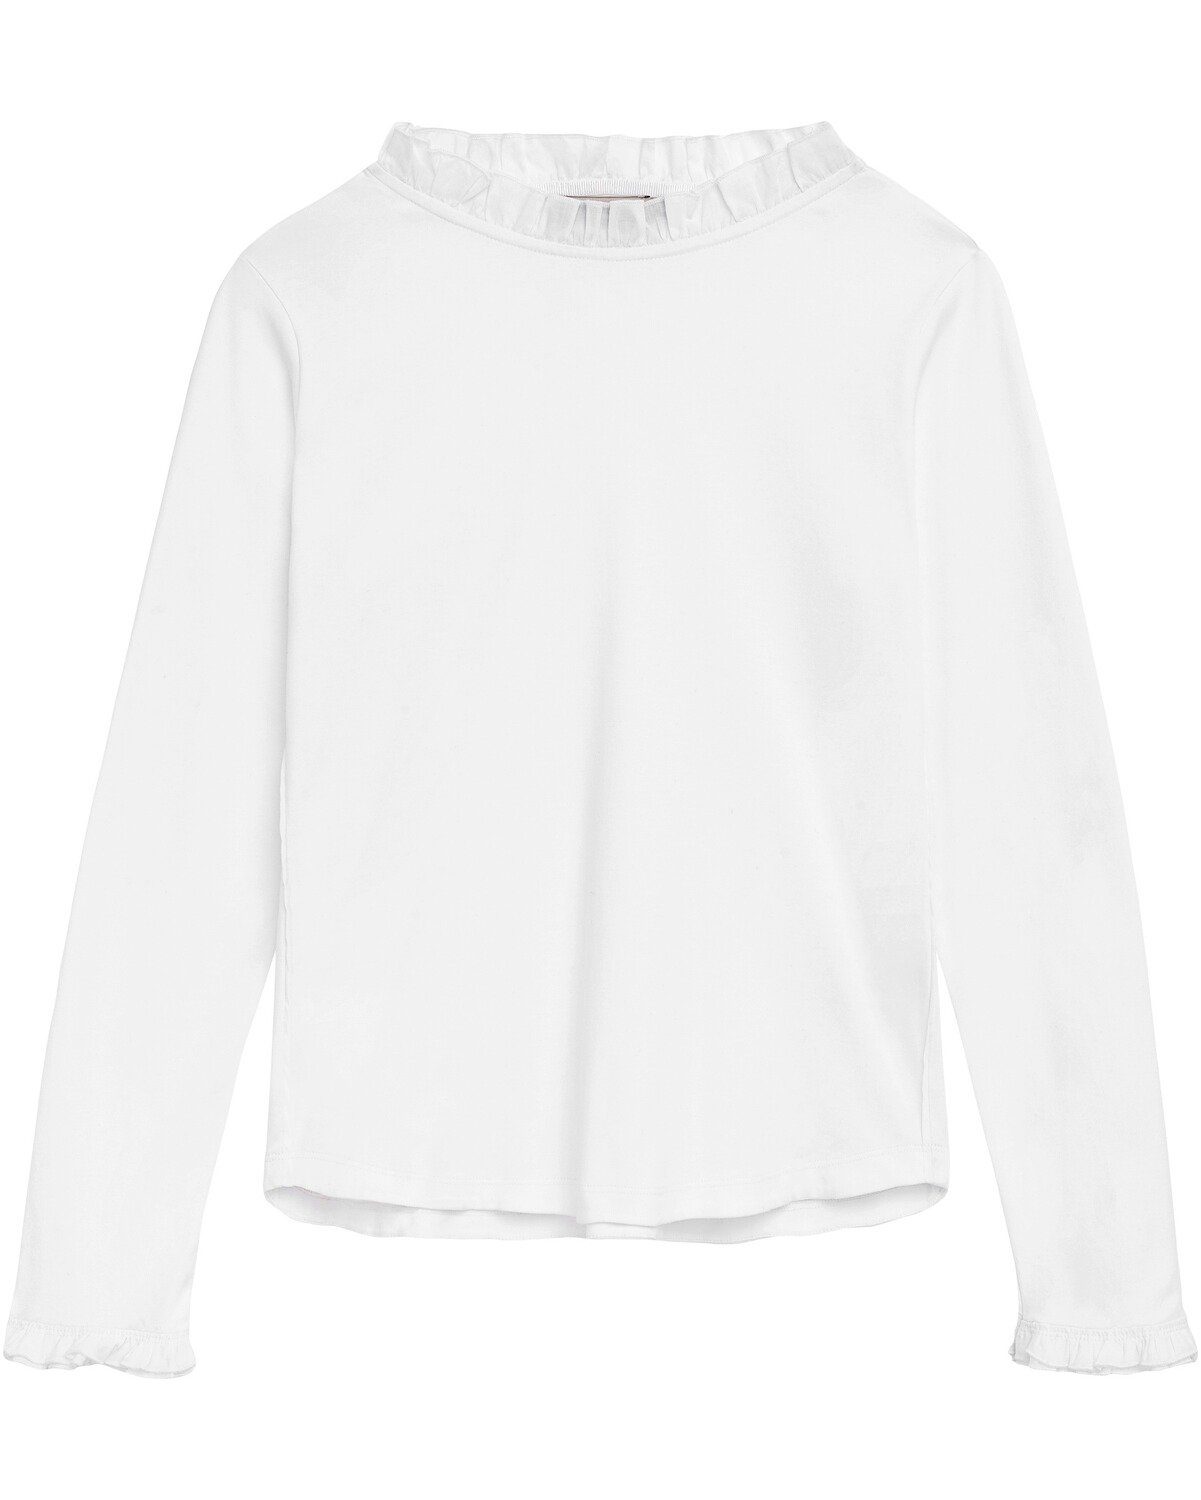 VON & ZU Langarmshirt Langarm-Shirt Weiß mit Rüschen